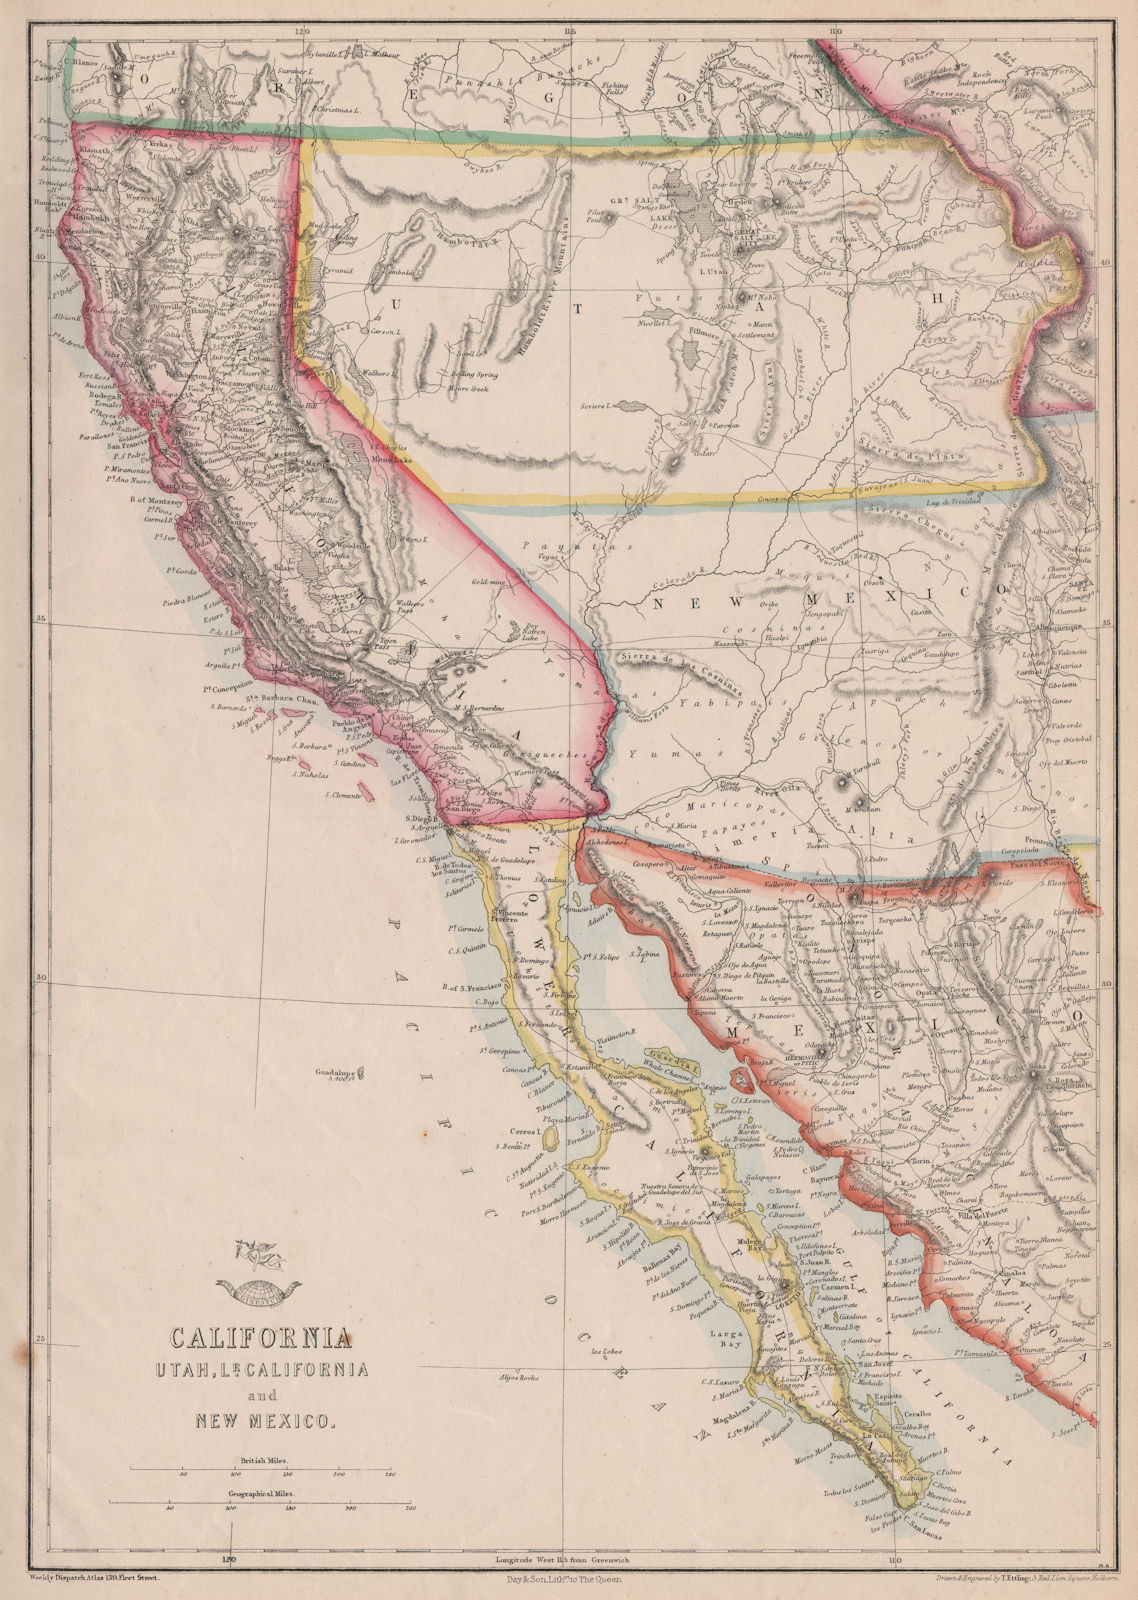 BAJA/CALIFORNIA, UTAH & NEW MEXICO TERRITORIES. Pre-Nevada. ETTLING 1863 map